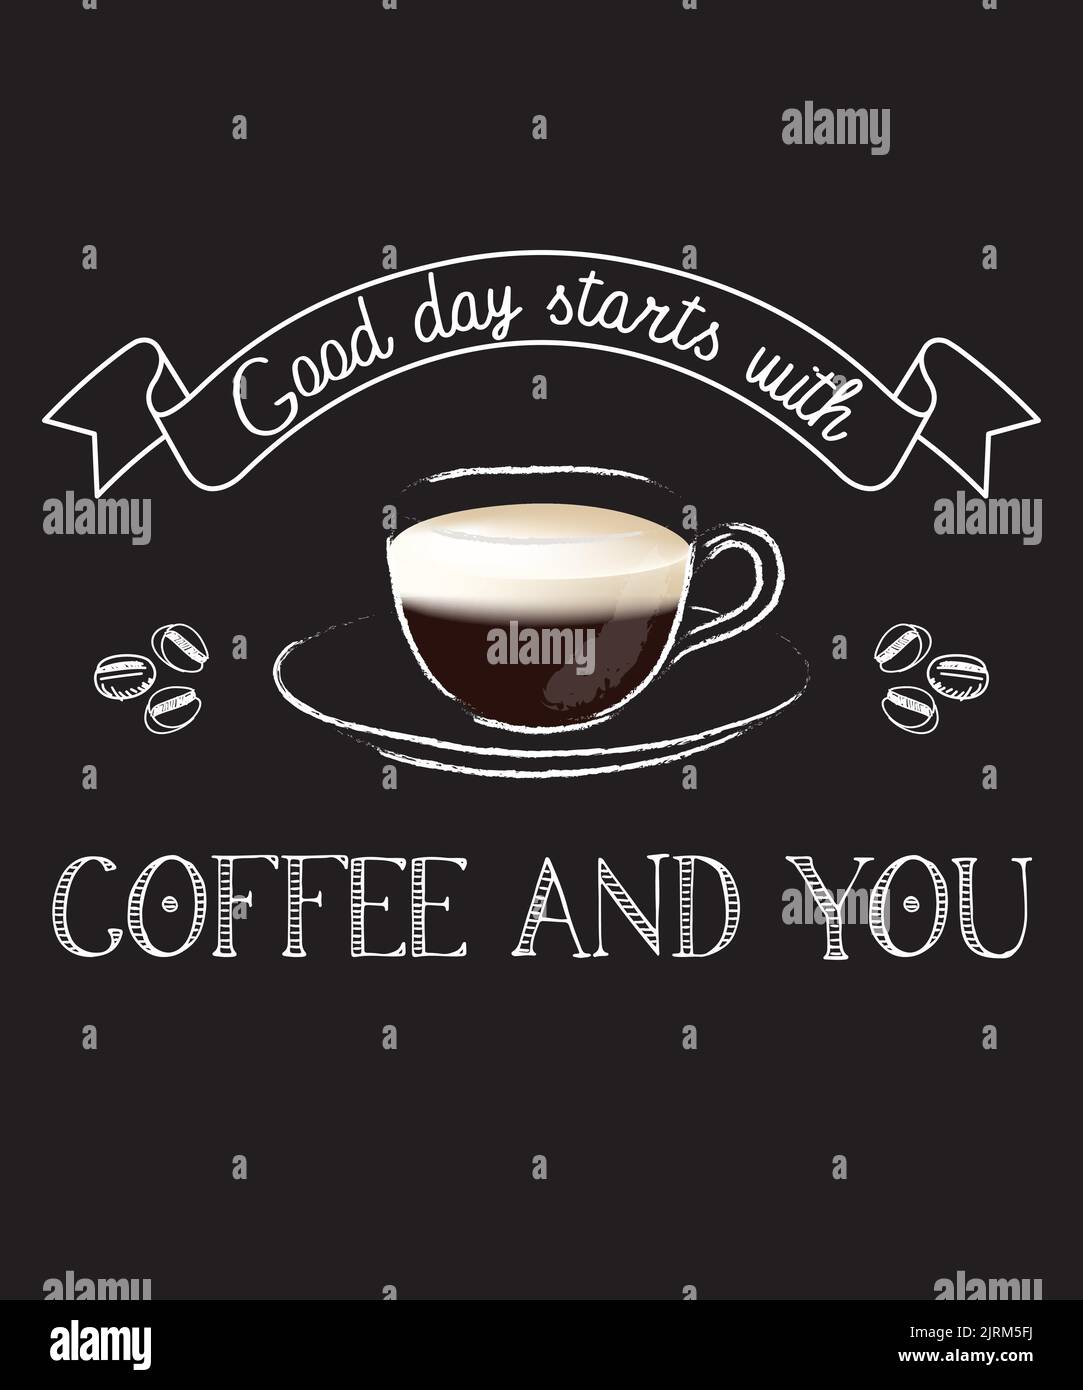 Der gute Tag beginnt mit Kaffee und du - Druck für T-Shirt, Poster, Aufkleber. Ein Vorschlag für echte Kaffeeliebhaber. Stock Vektor